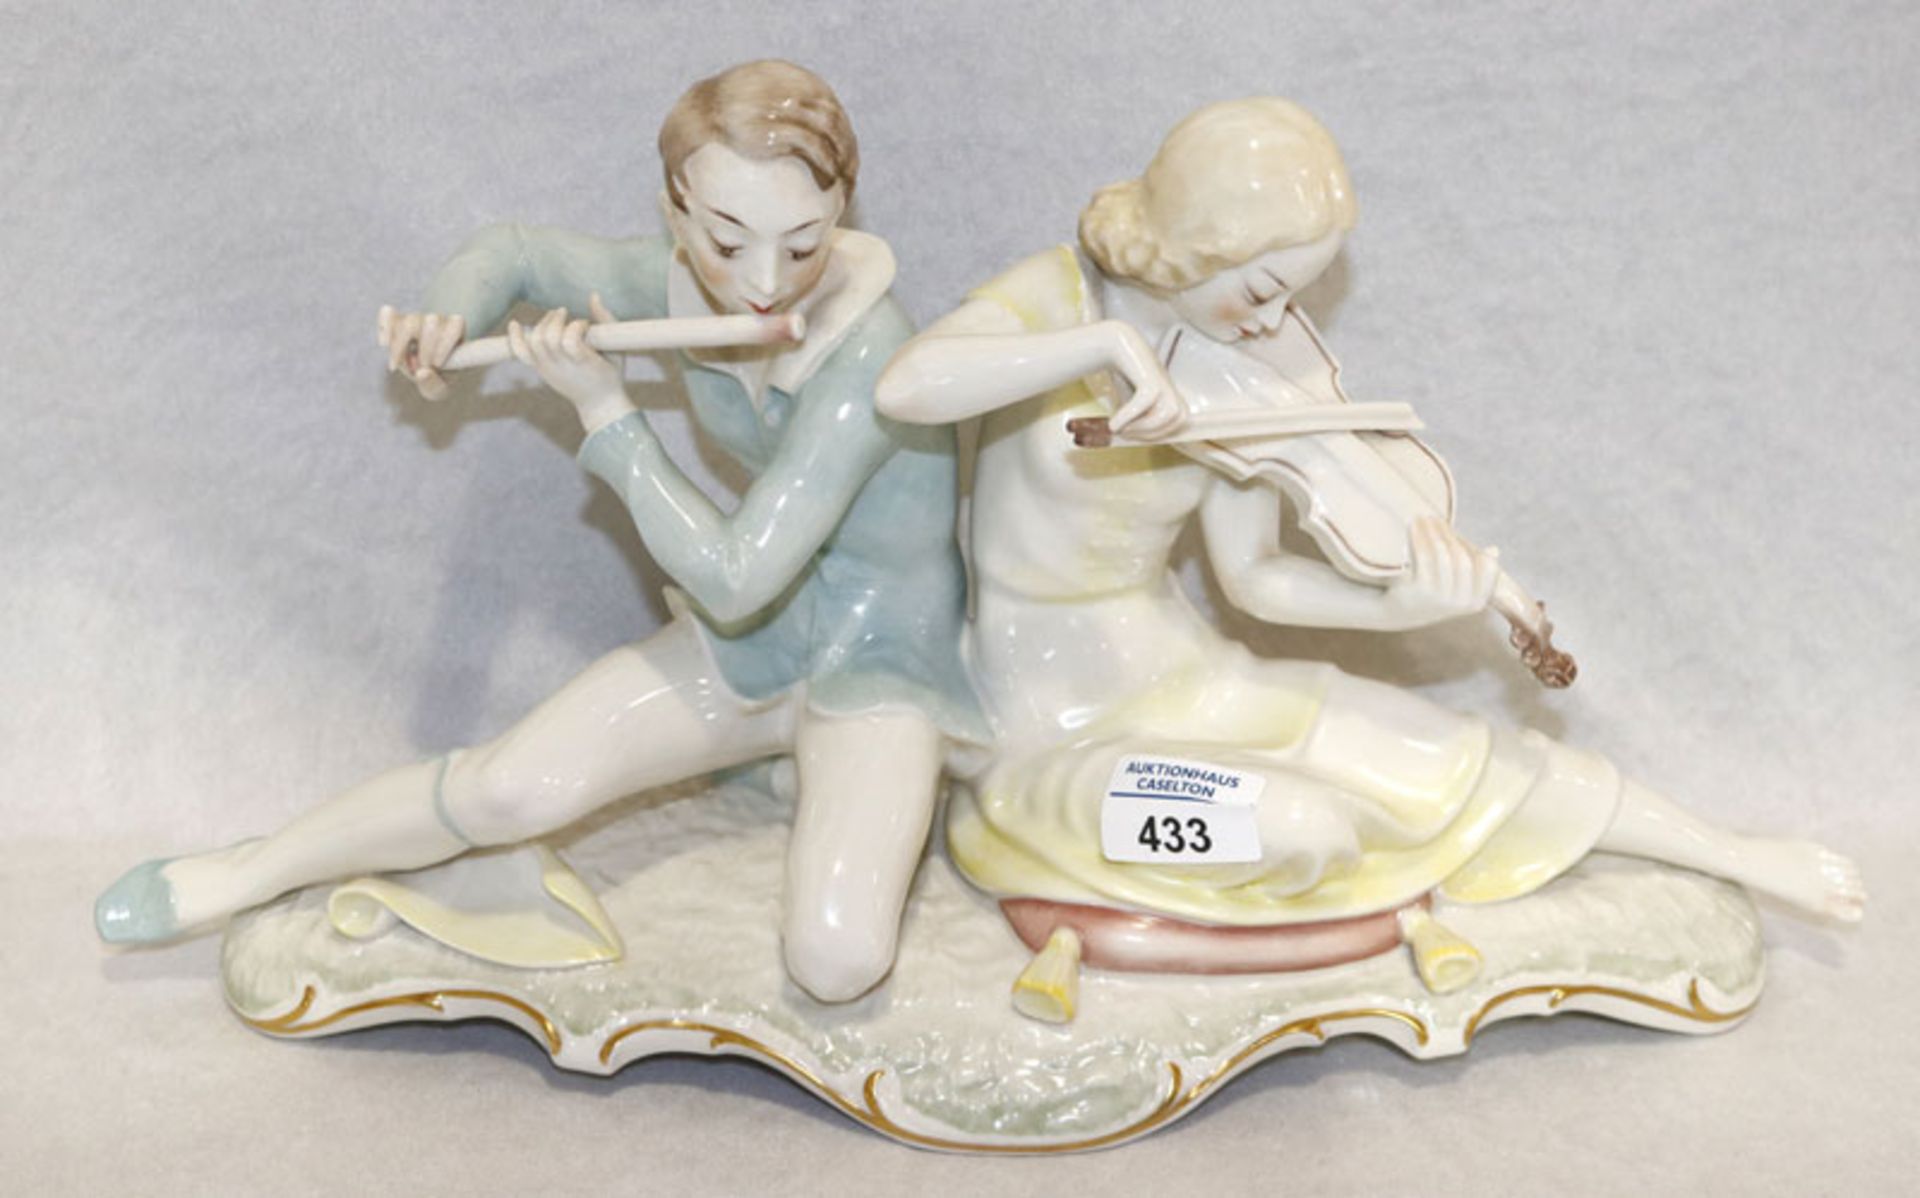 Hutschenreuther Porzellan Figurengruppe 'Flötenspieler und Geigenspielerin', pastellfarben glasiert,